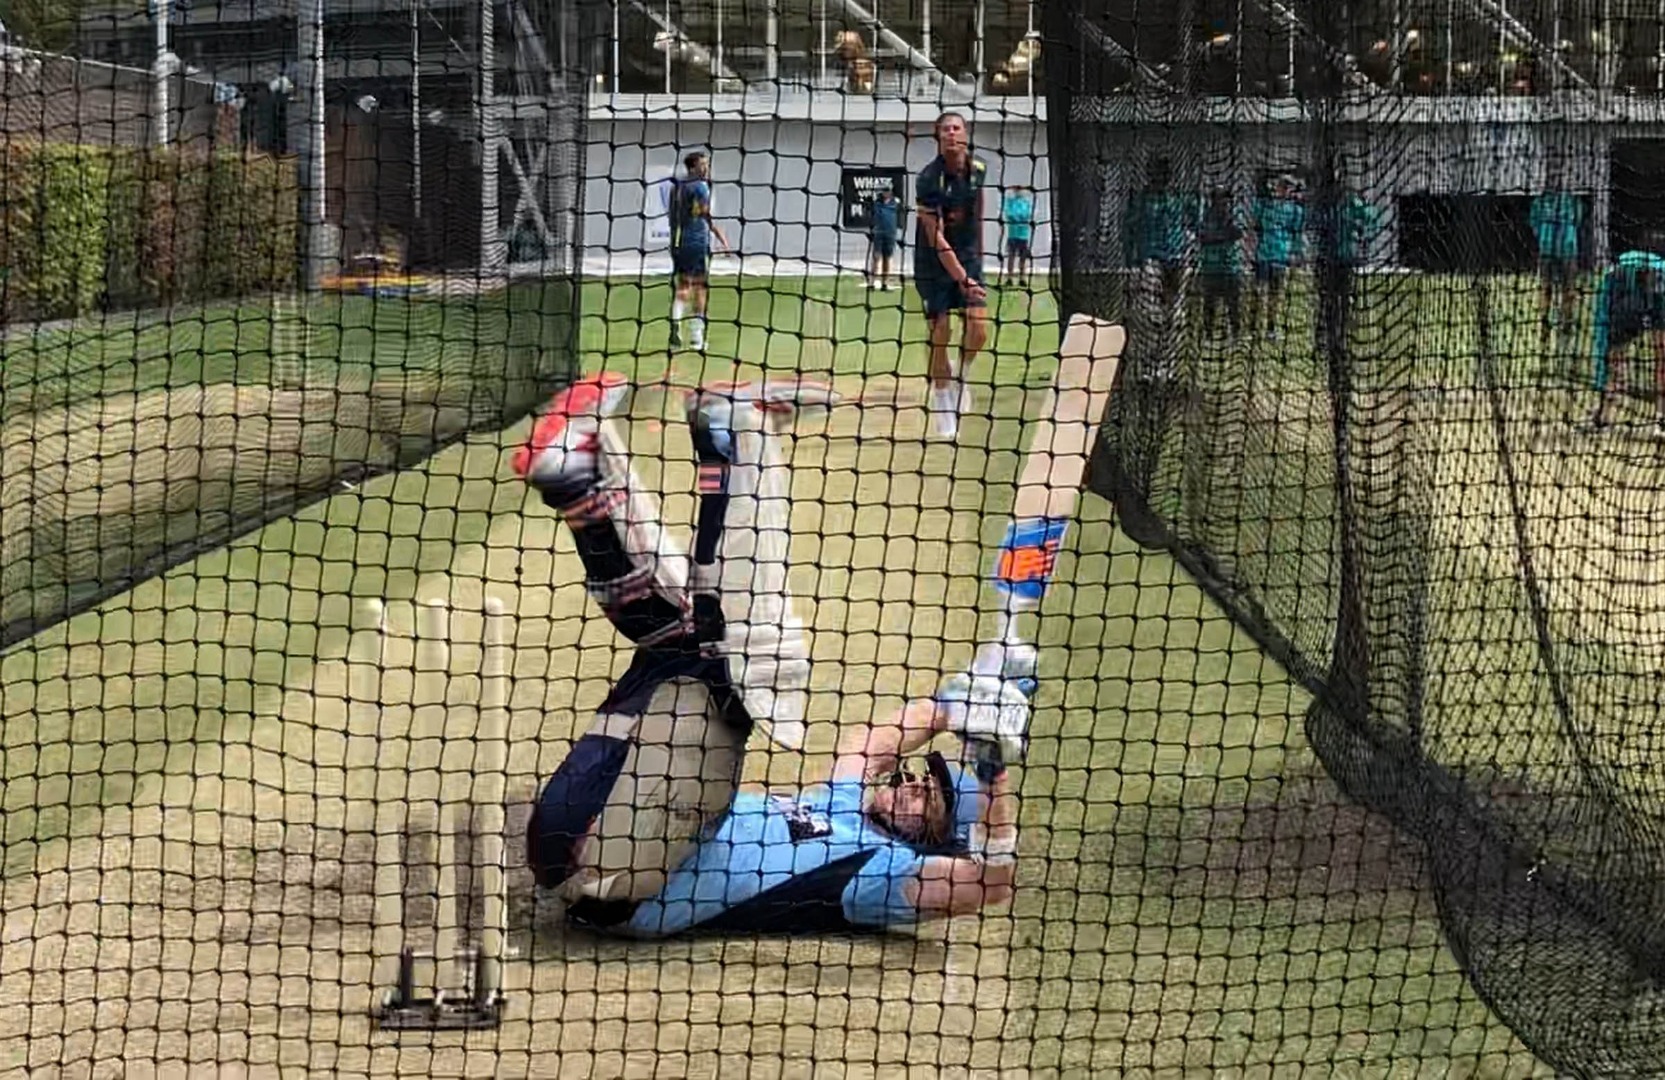 watch smith faces test quicks in scg nets WATCH: ऑस्ट्रेलियाई गेंदबाज़ों को 'विराट एंड कंपनी' से निपटने की तैयारी करवाने पहुंचे स्टीव स्मिथ